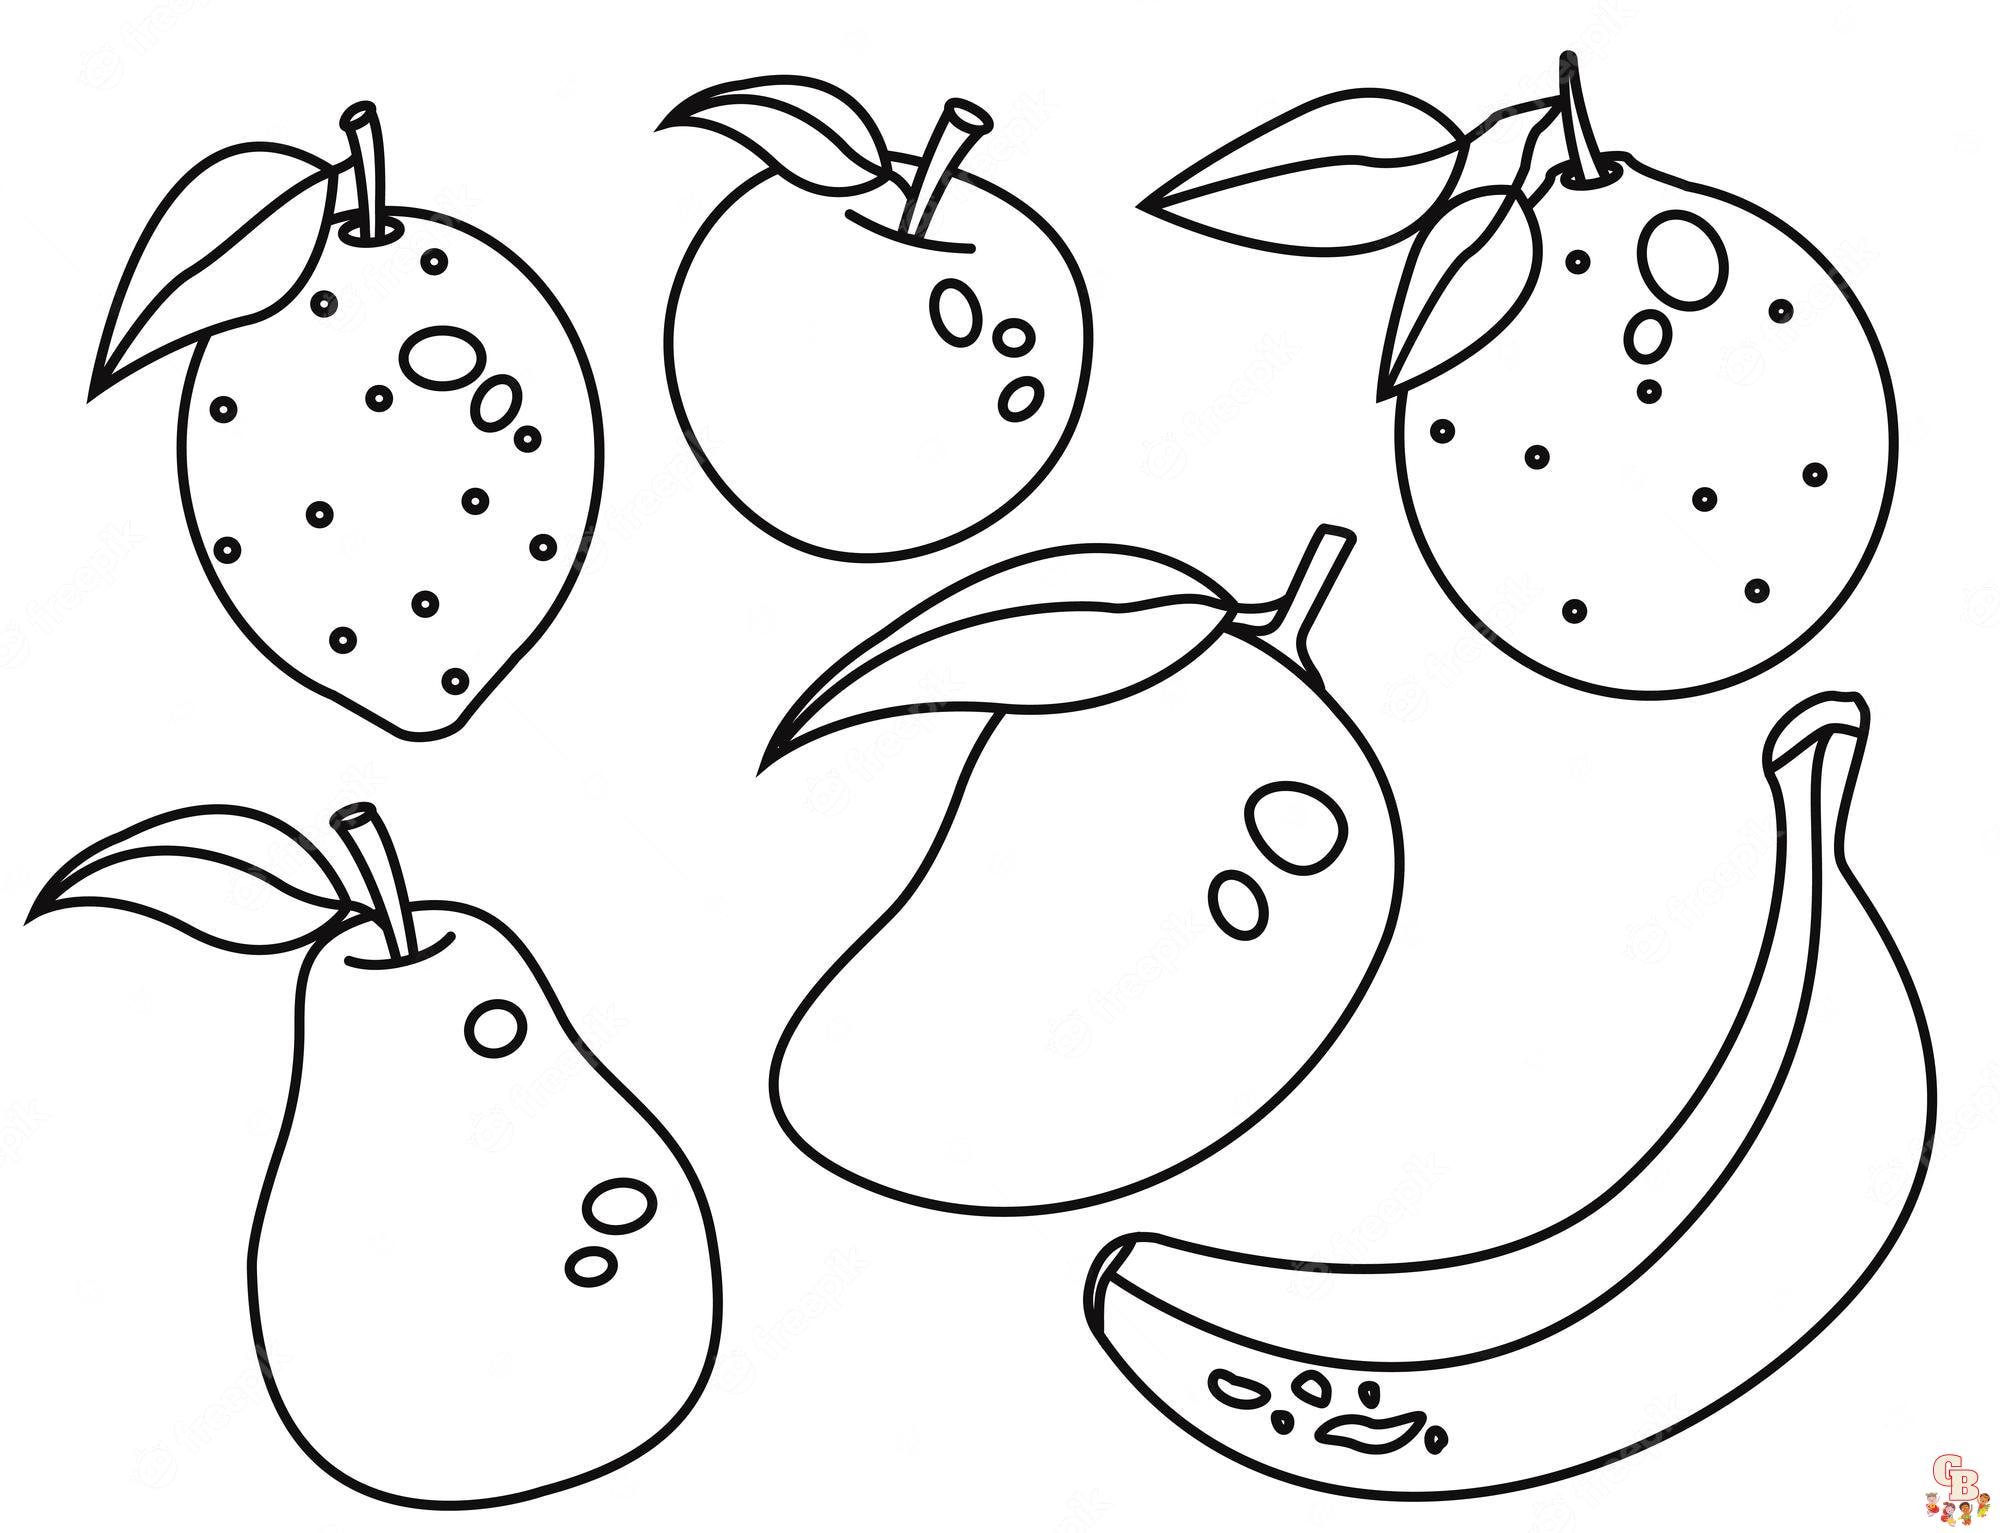 Gratis fruitkleurplaten - Aardbeien, bananen, sinaasappels, appels en meer